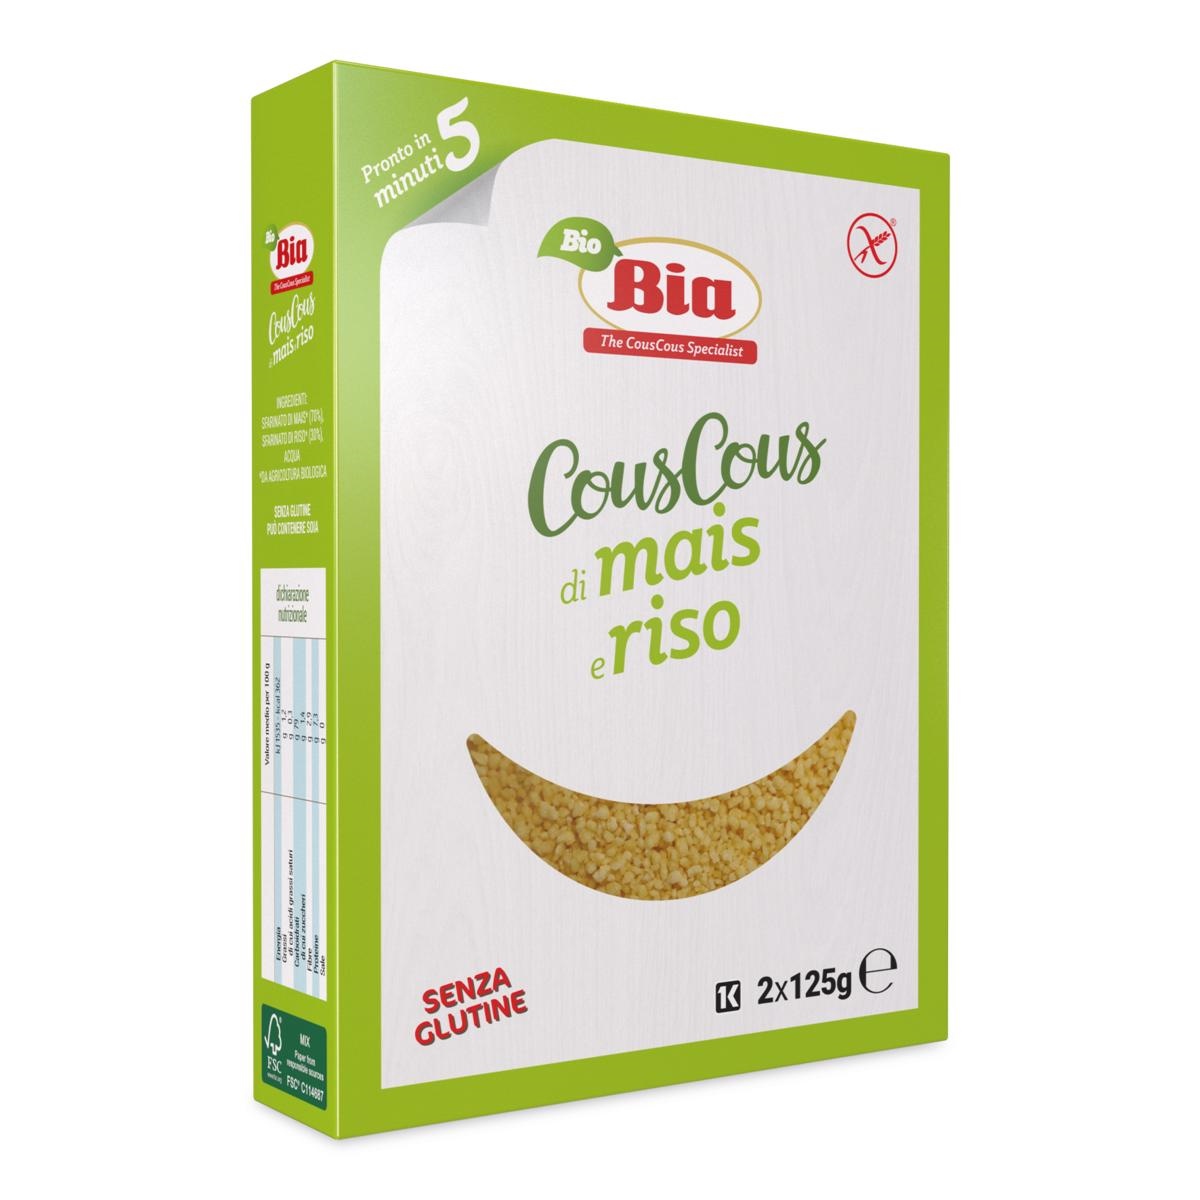 Cous Cous di Mais e Riso BIO senza glutine 2x125g